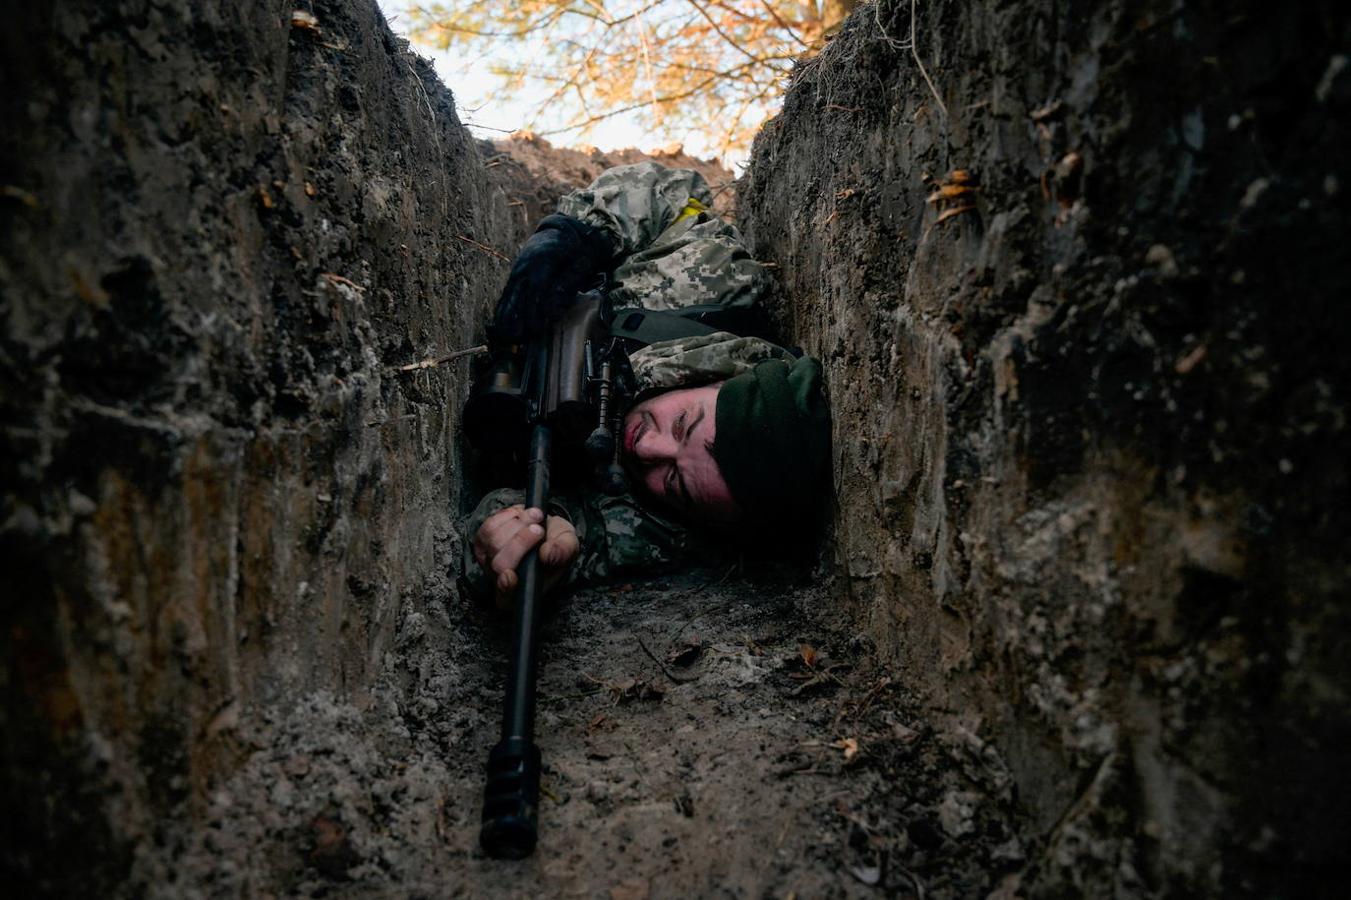 Ucrania impone la ley marcial. El Gobierno del país dio orden a todos los hombres  de entre 18 y 65 años de acudir a filas para luchar contra el Ejército ruso. Además, cientos de ucranianos, de todas las edades, se han unido a las brigadas voluntarias para defender su país.